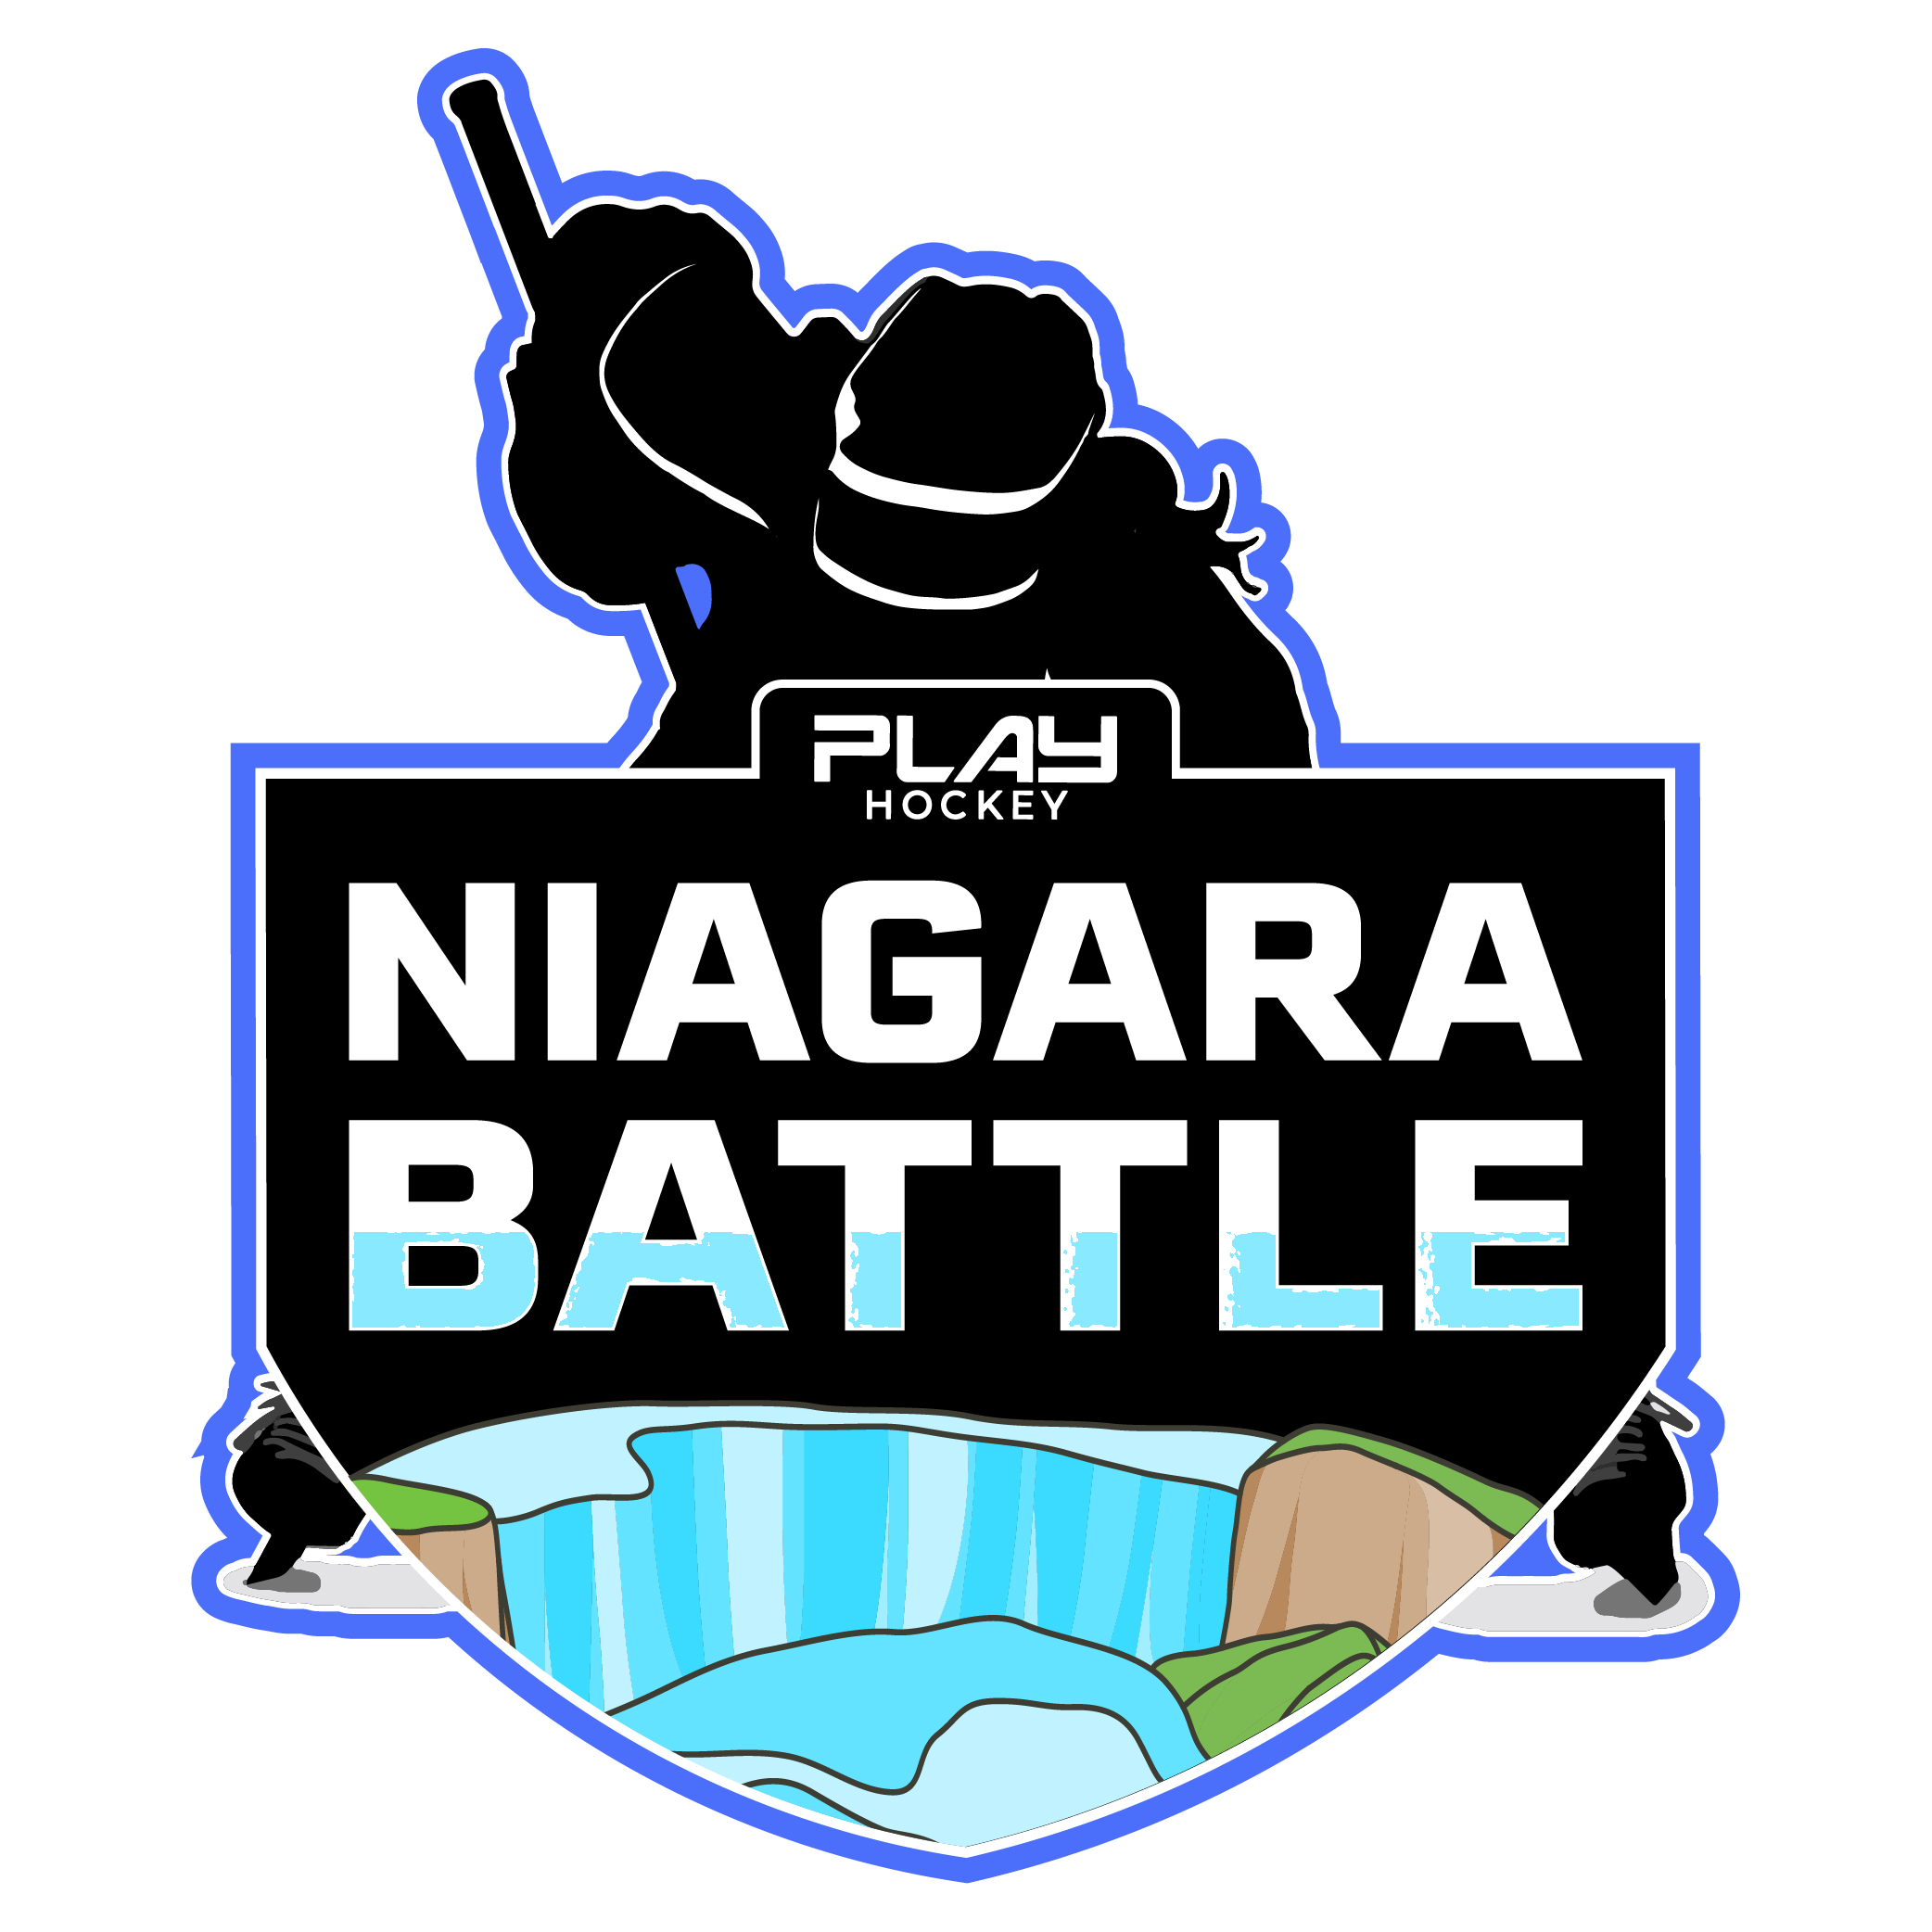 https://20502767.fs1.hubspotusercontent-na1.net/hubfs/20502767/PH-Niagara-Battle-Girls-01-1.png